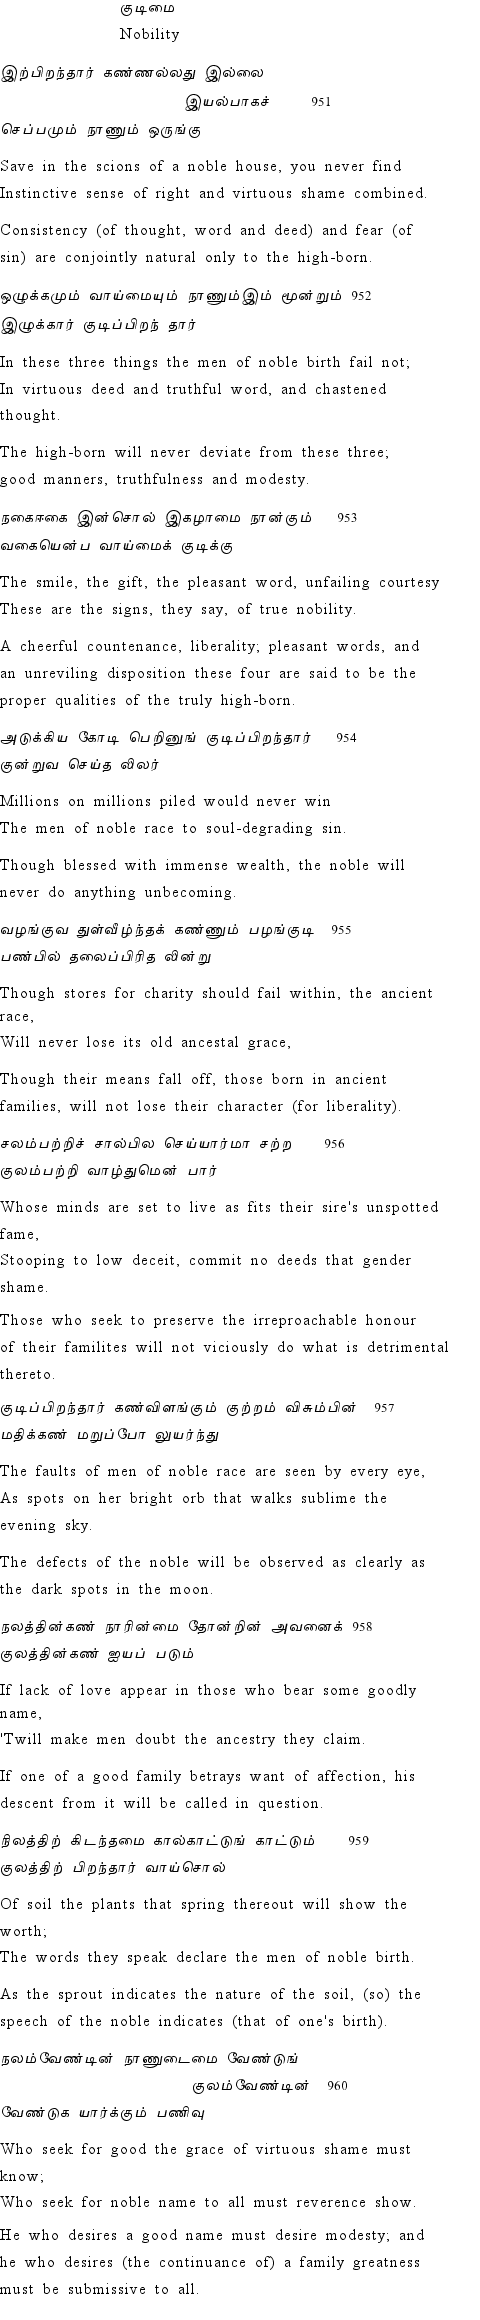 Text of Adhikaram 96